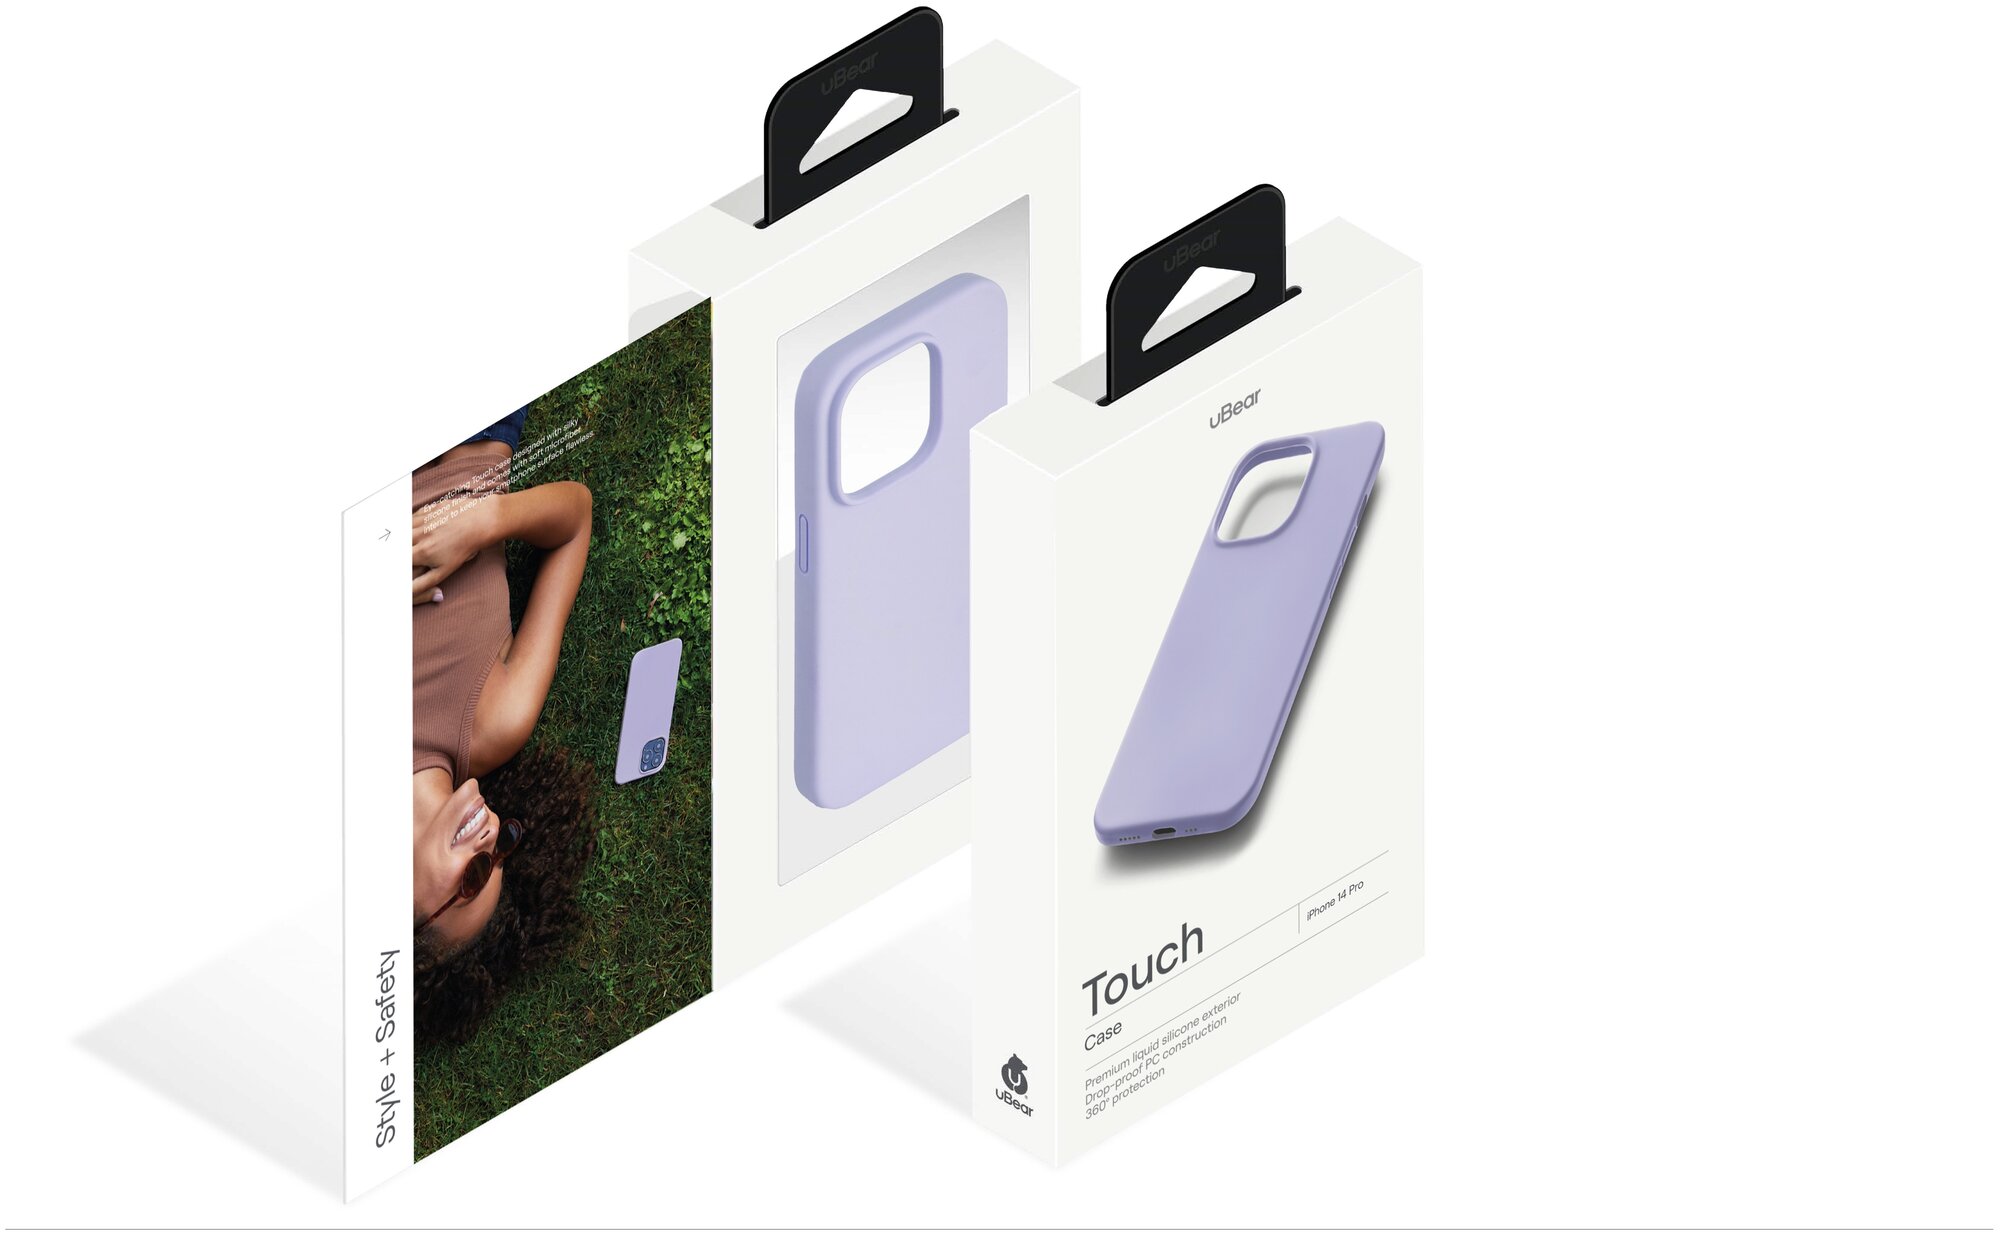 Чехол защитный uBear Touch Case для iPhone 14 Pro, силикон, софт-тач, фиолетовый